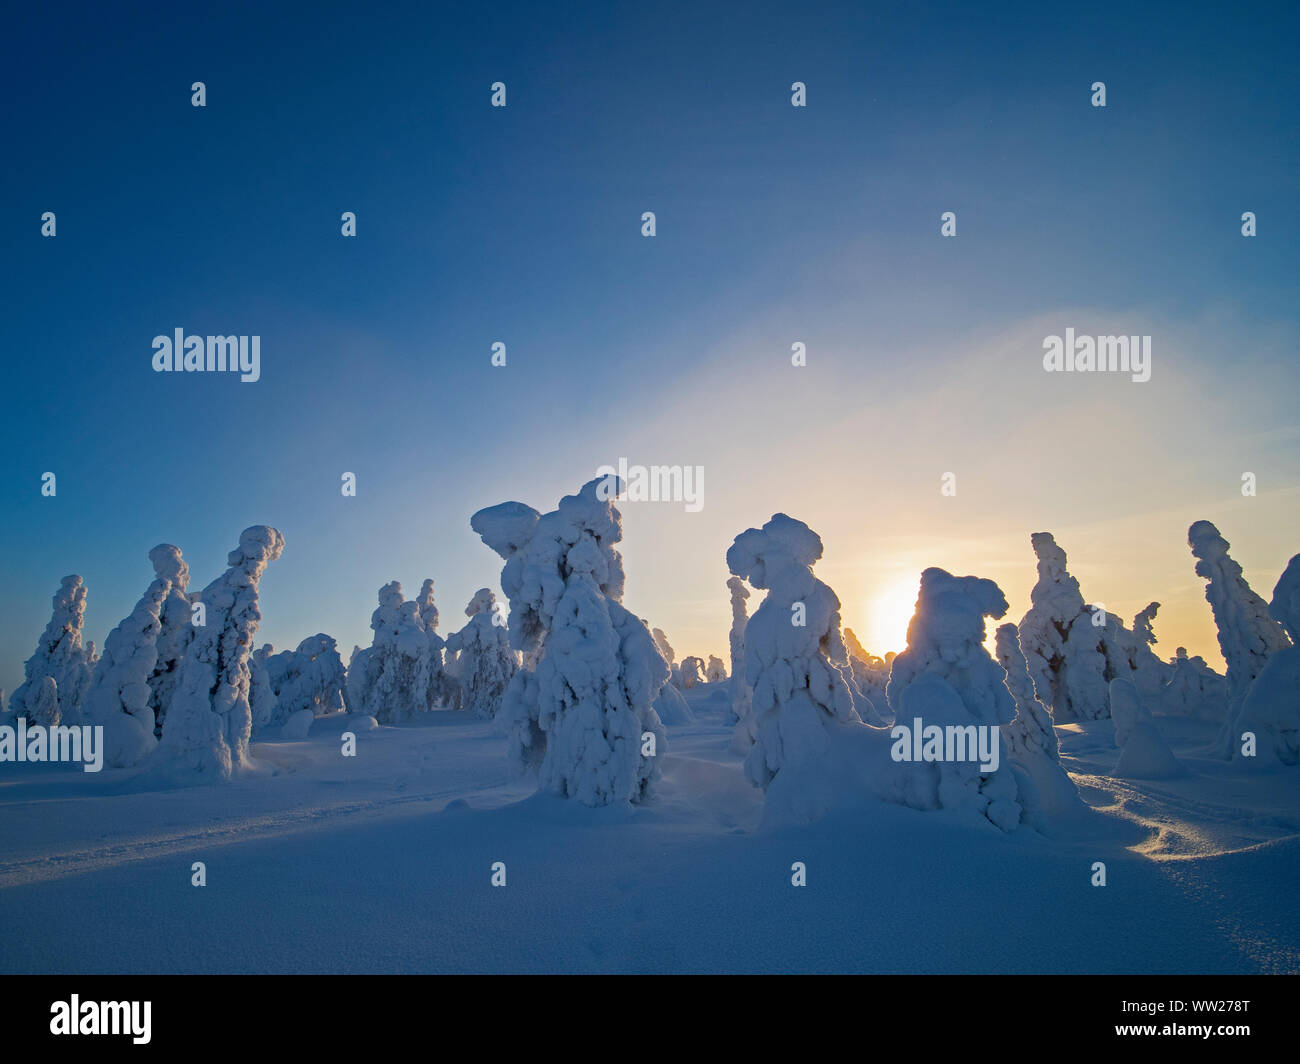 Les épinettes enveloppé dans la neige pointe Ruka Kuusamo Finlande Janvier. Lorsque la neige manteaux sapins comme celle-ci, il est connu comme la neige et la couronne peut mettre une charge Banque D'Images